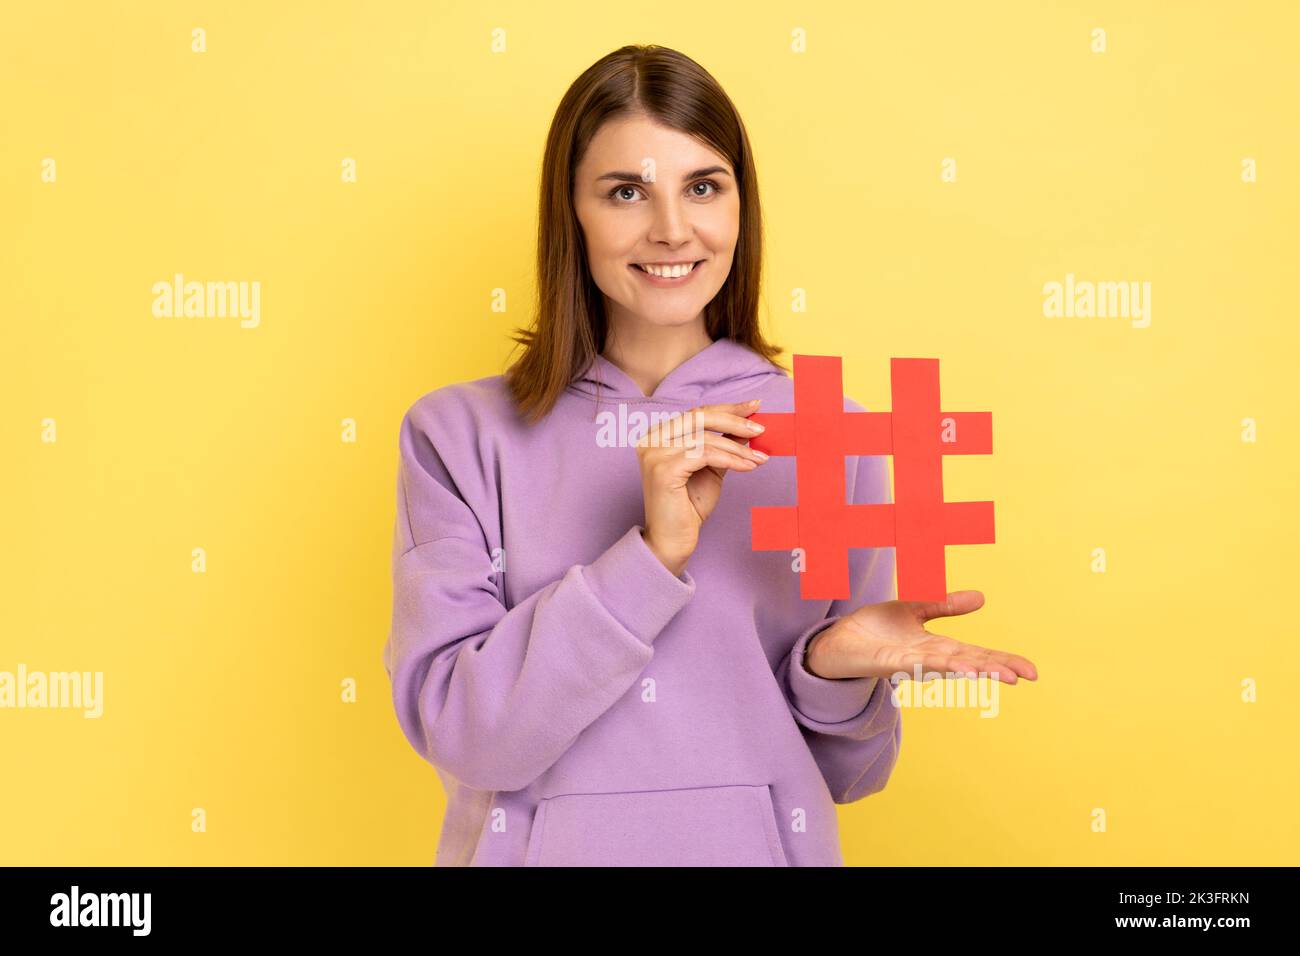 Portrait de la jeune femme debout présentant le hashtag rouge, l'étiquetage des tendances de blog, sujet viral dans le réseau social, portant le capuchon violet. Studio d'intérieur isolé sur fond jaune. Banque D'Images